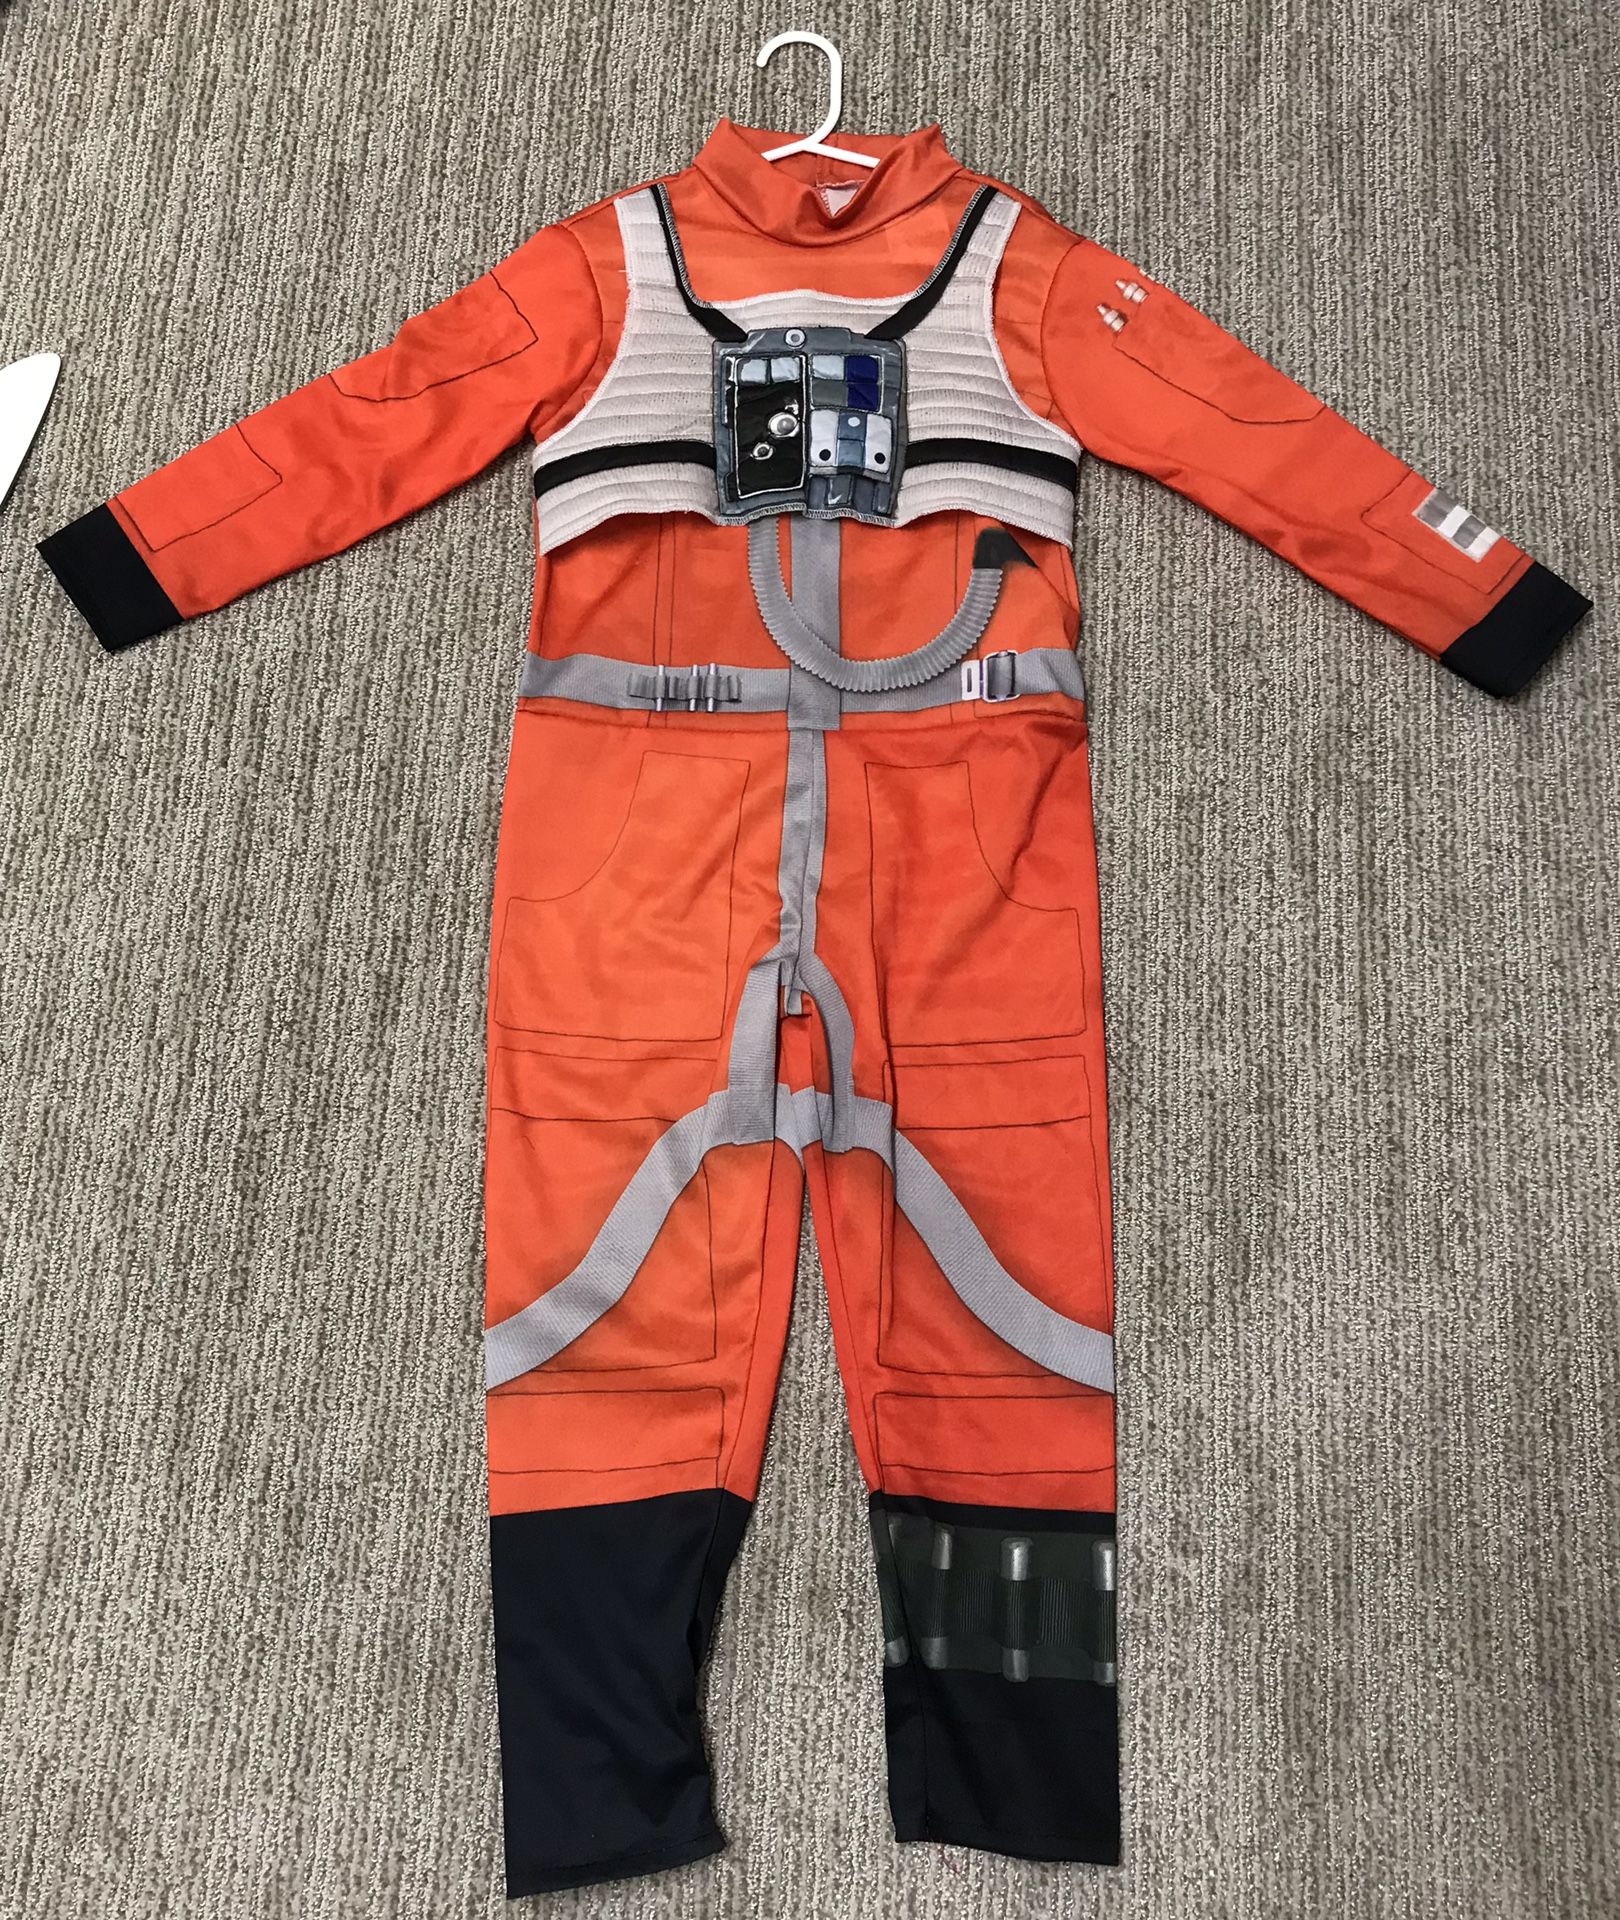 Pilot Costume 